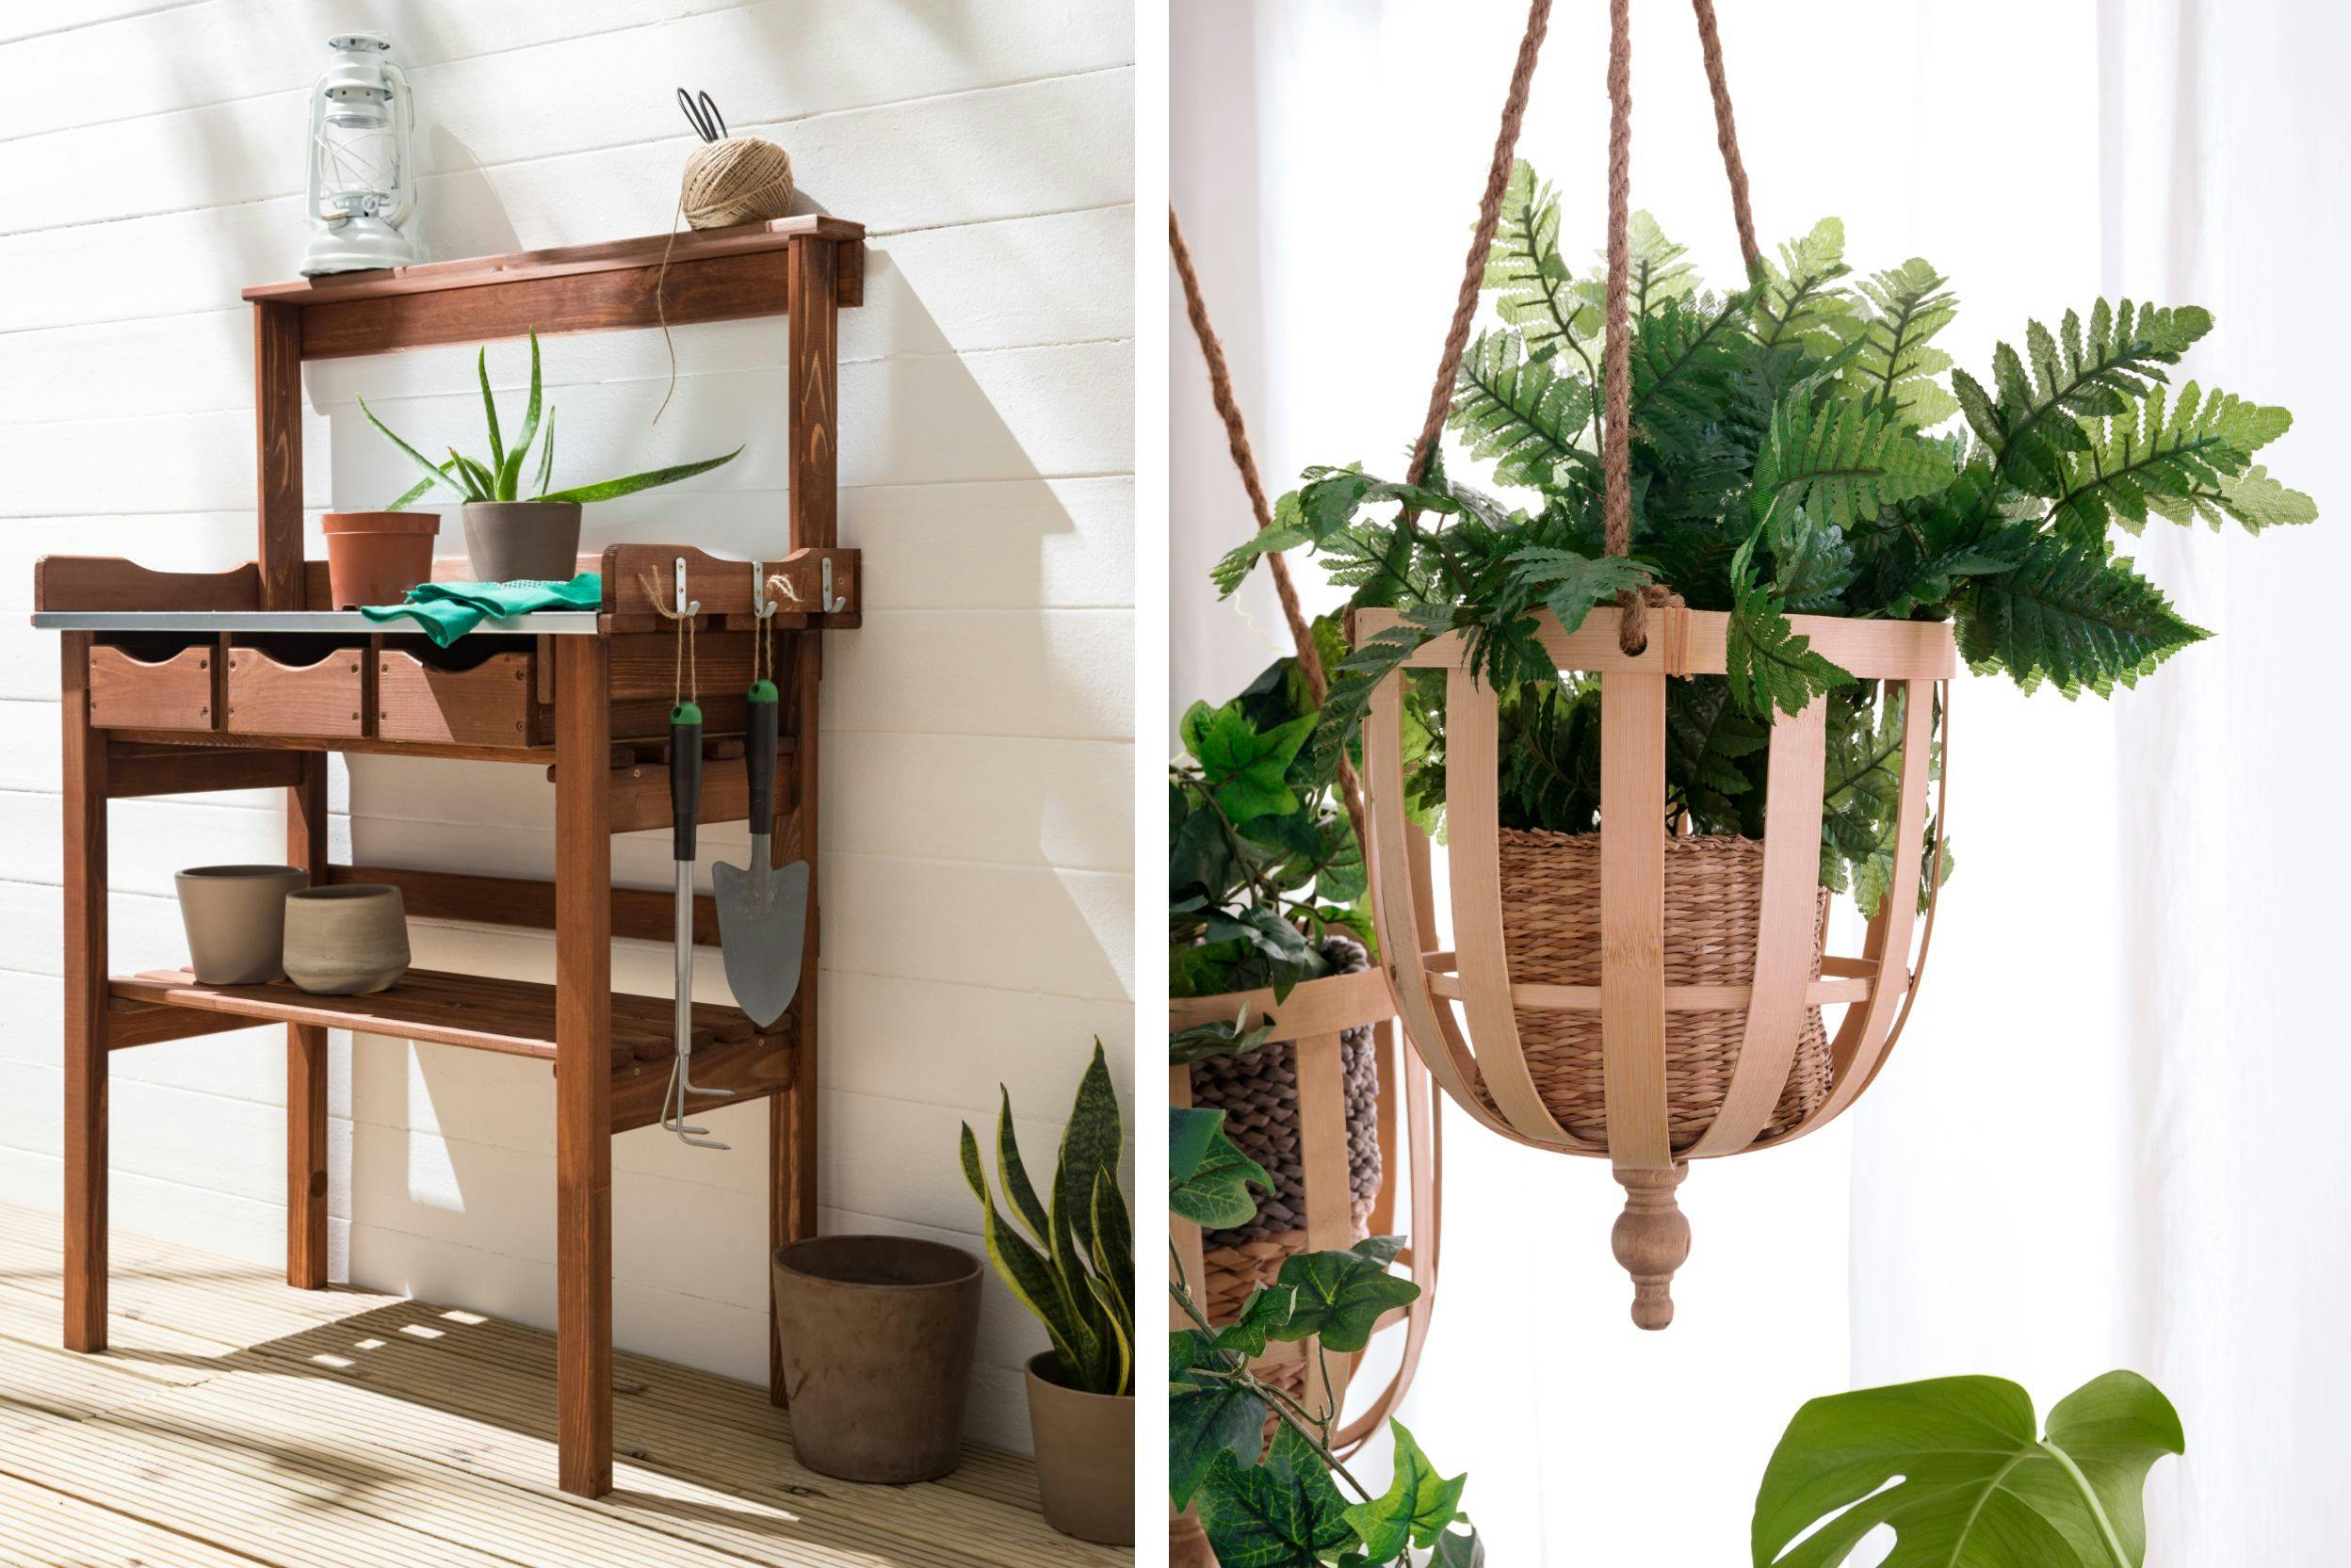 Deux photos. L'une est un gros plan d'une plante en pot suspendue, l'autre d'un meuble en bois avec divers outils de jardinages et plantes en pots